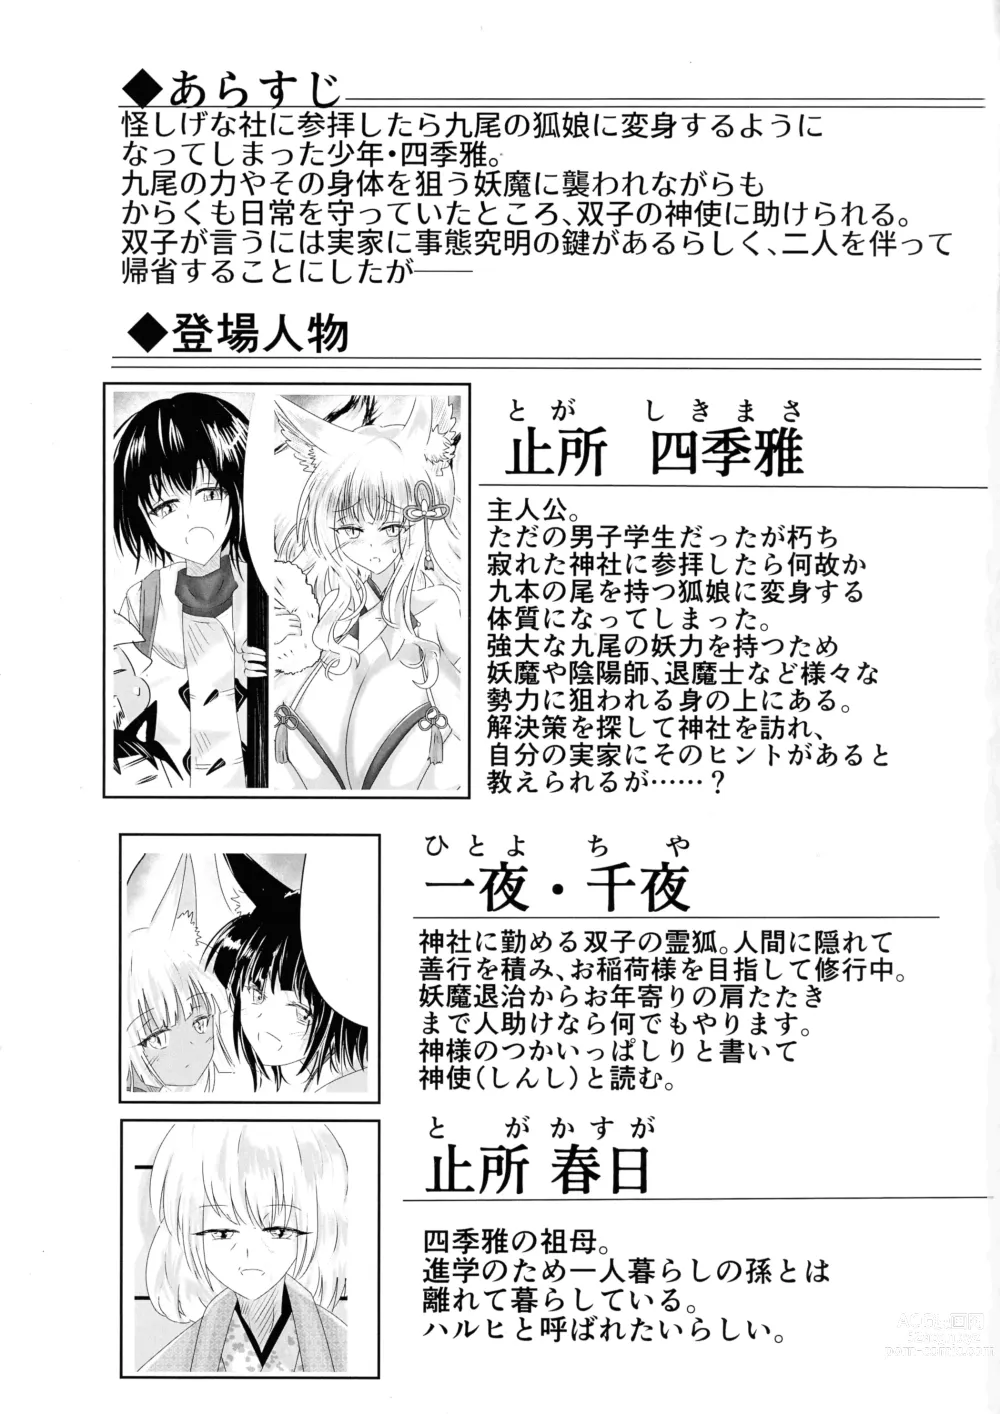 Page 2 of doujinshi Hako Tenjin